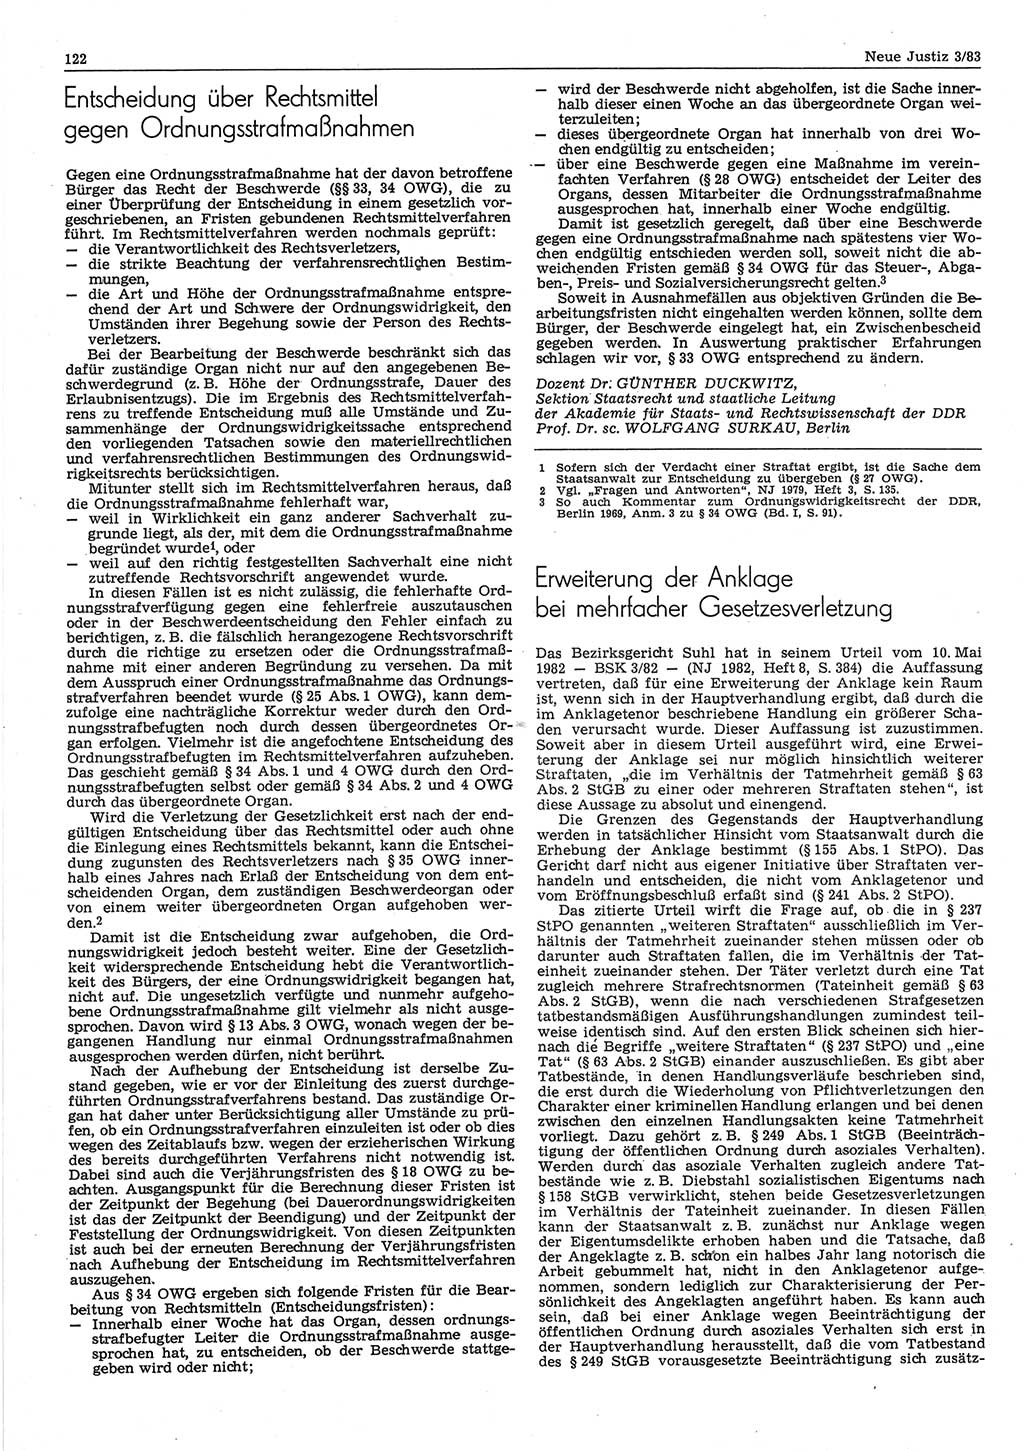 Neue Justiz (NJ), Zeitschrift für sozialistisches Recht und Gesetzlichkeit [Deutsche Demokratische Republik (DDR)], 37. Jahrgang 1983, Seite 122 (NJ DDR 1983, S. 122)